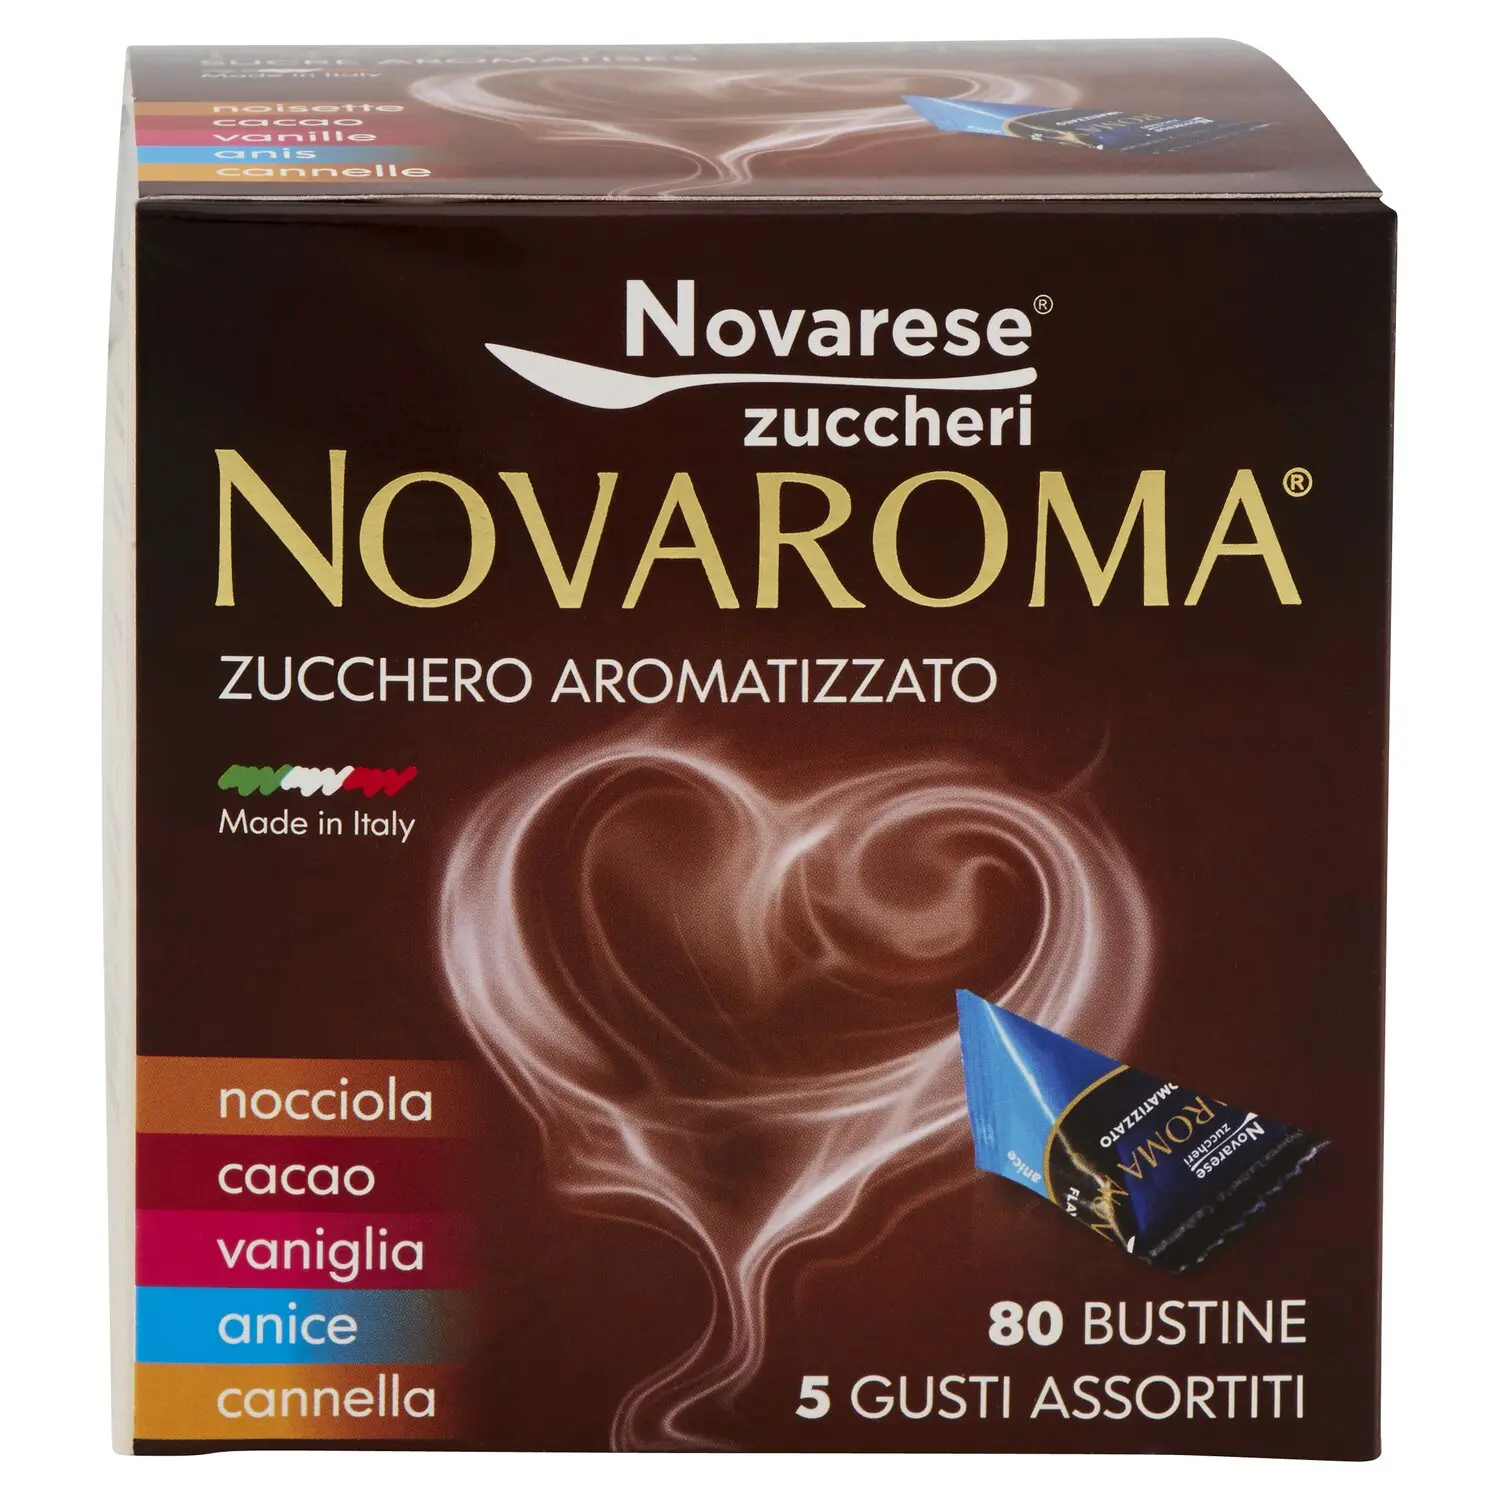 Novaroma Zucchero Aromatizzato nocciola - cacao - vaniglia - anice -  cannella 80 x 5 g